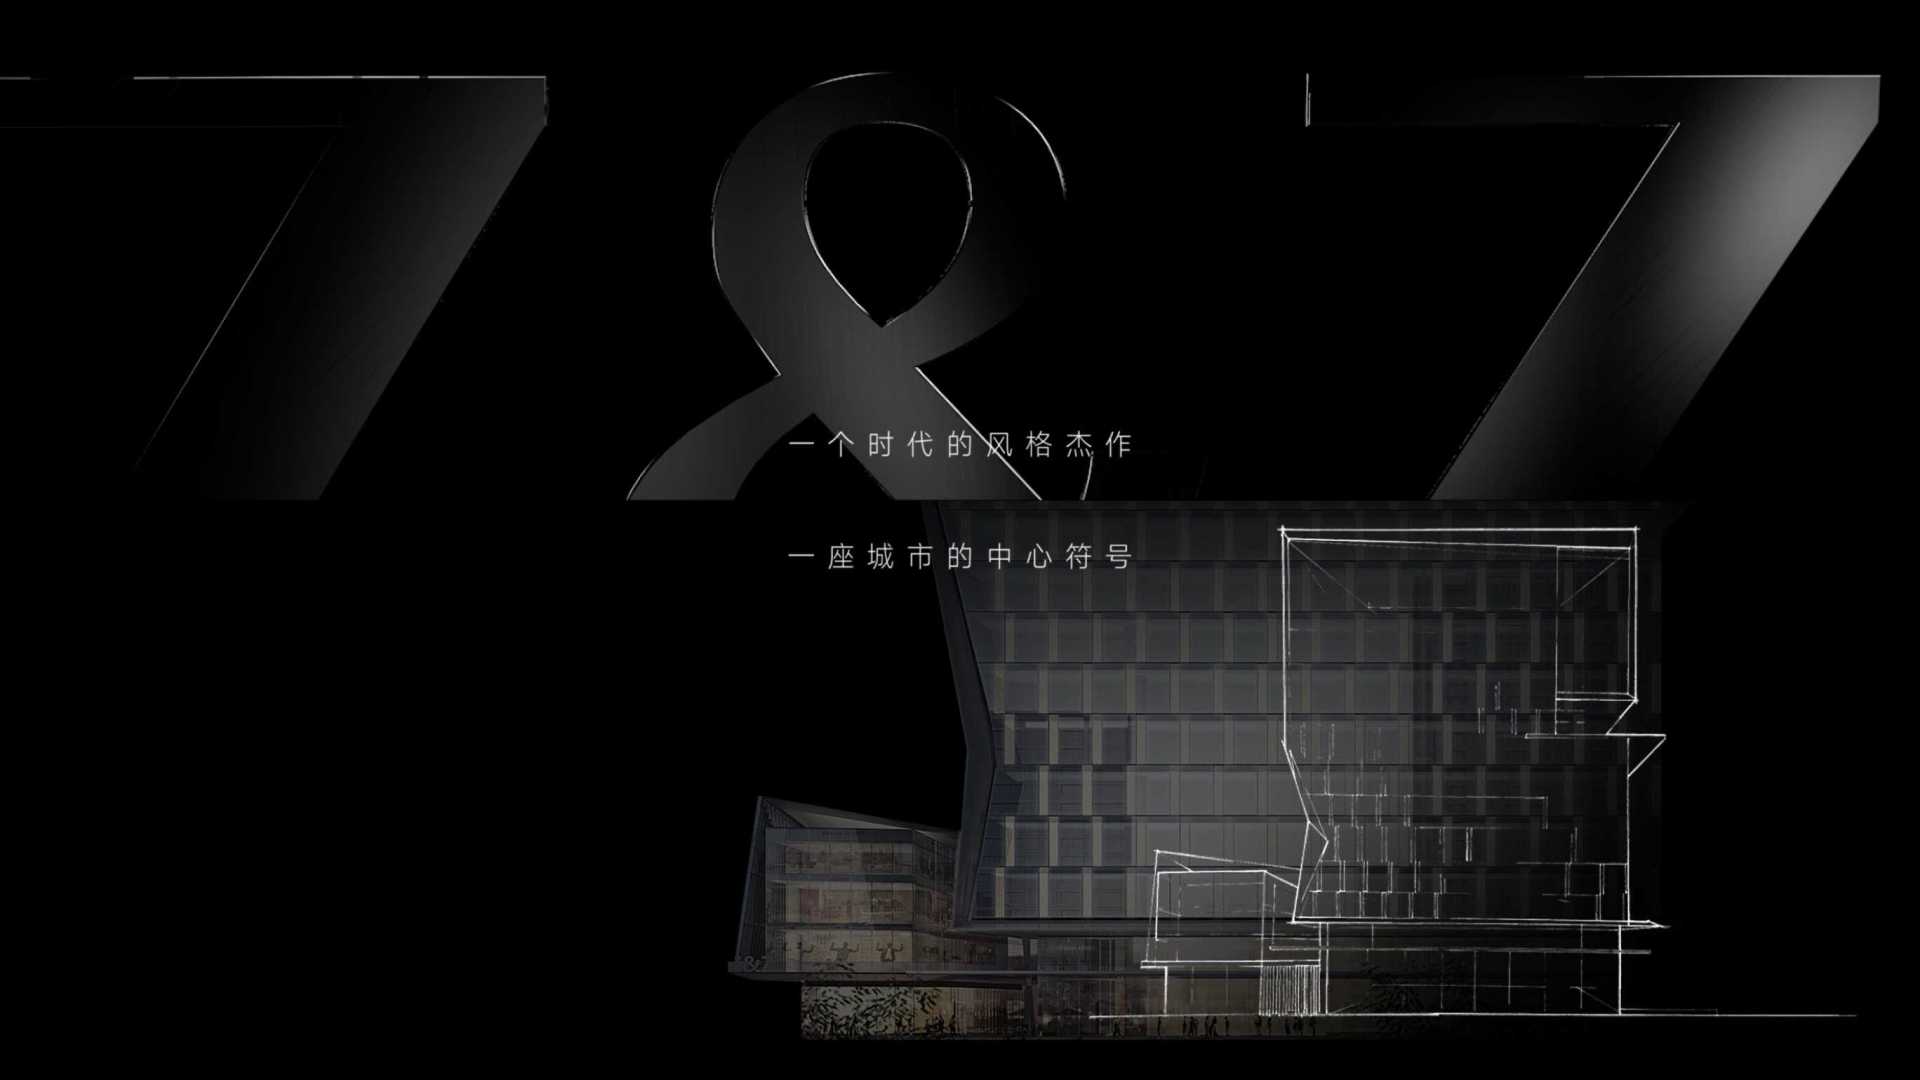 地产【商业中心】10s小视频 项目亮相